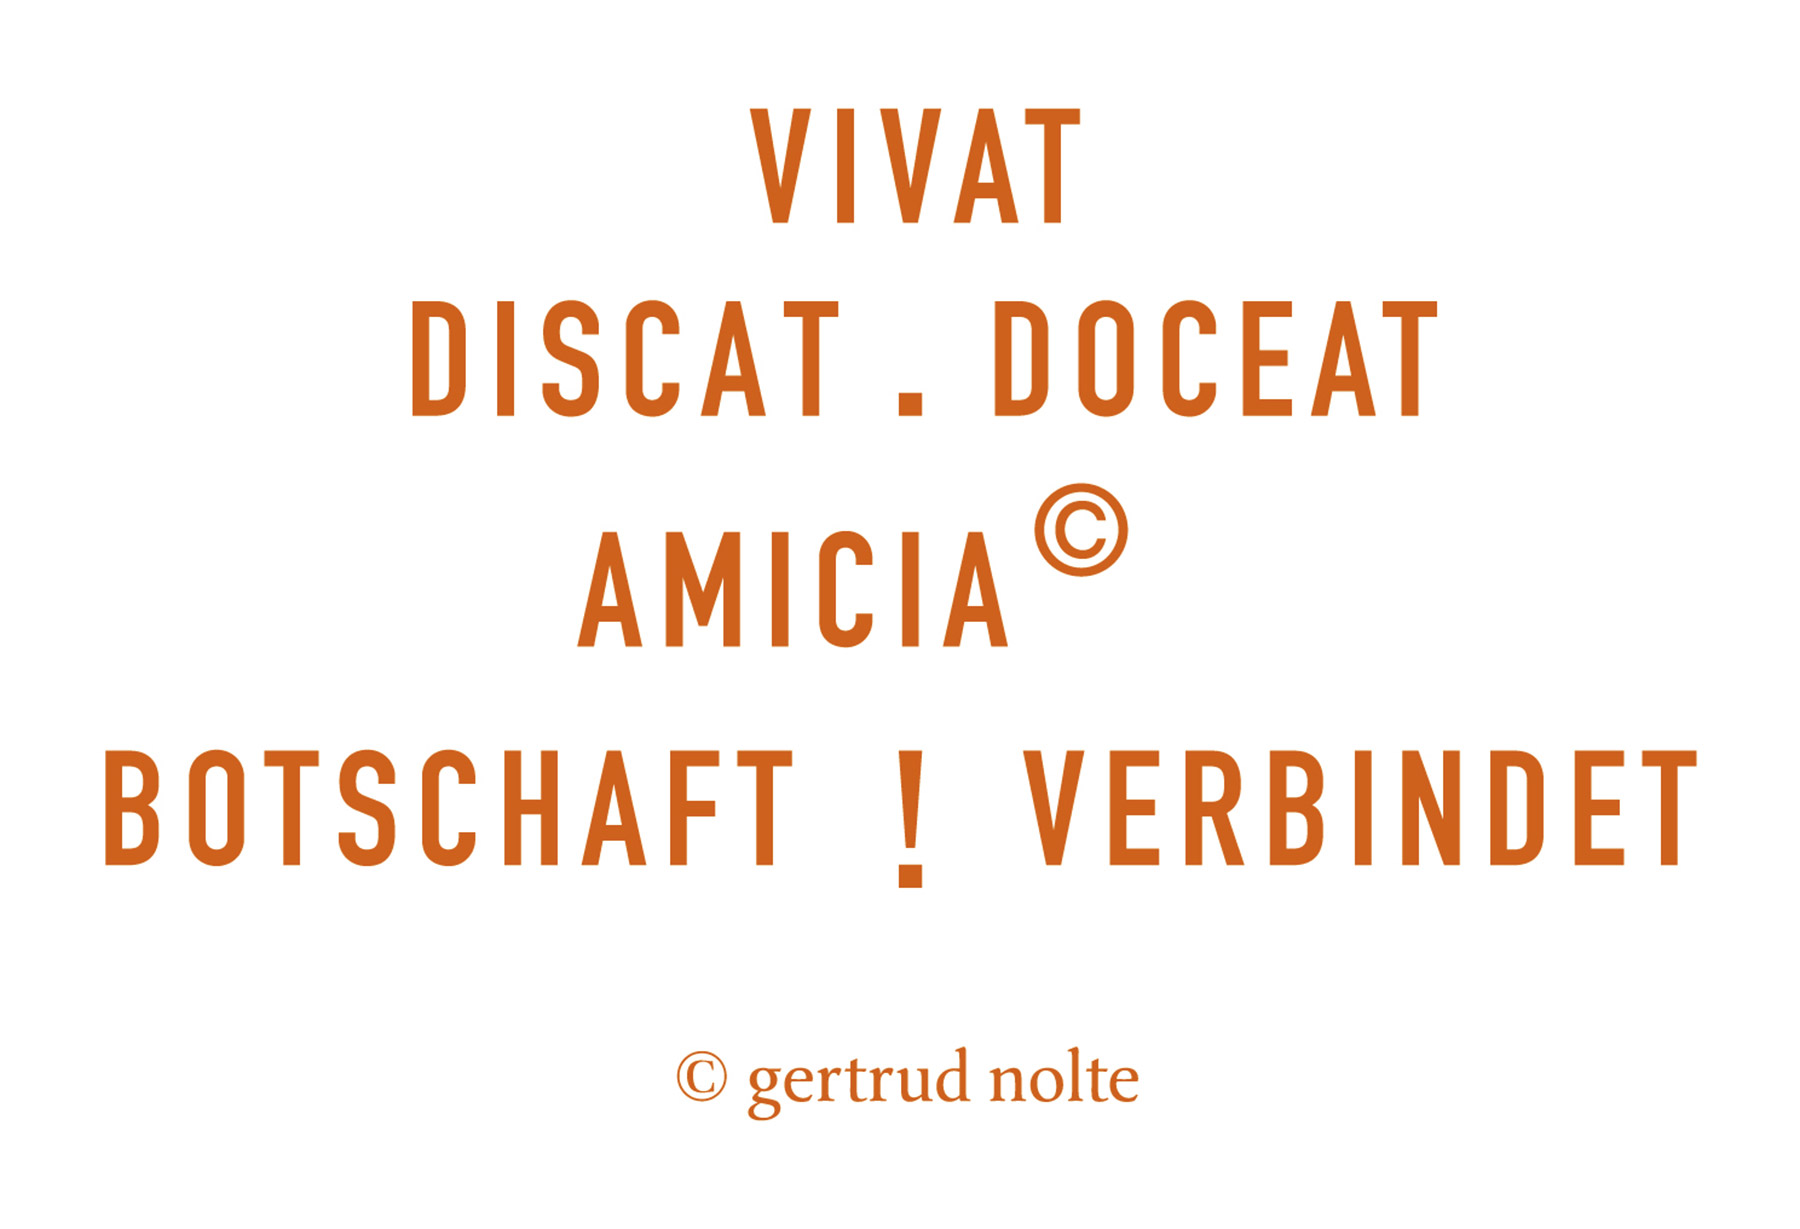 06a_VIVAT-DISCAT-DOCEAT-AMICIA_orange_Nolte_1800px